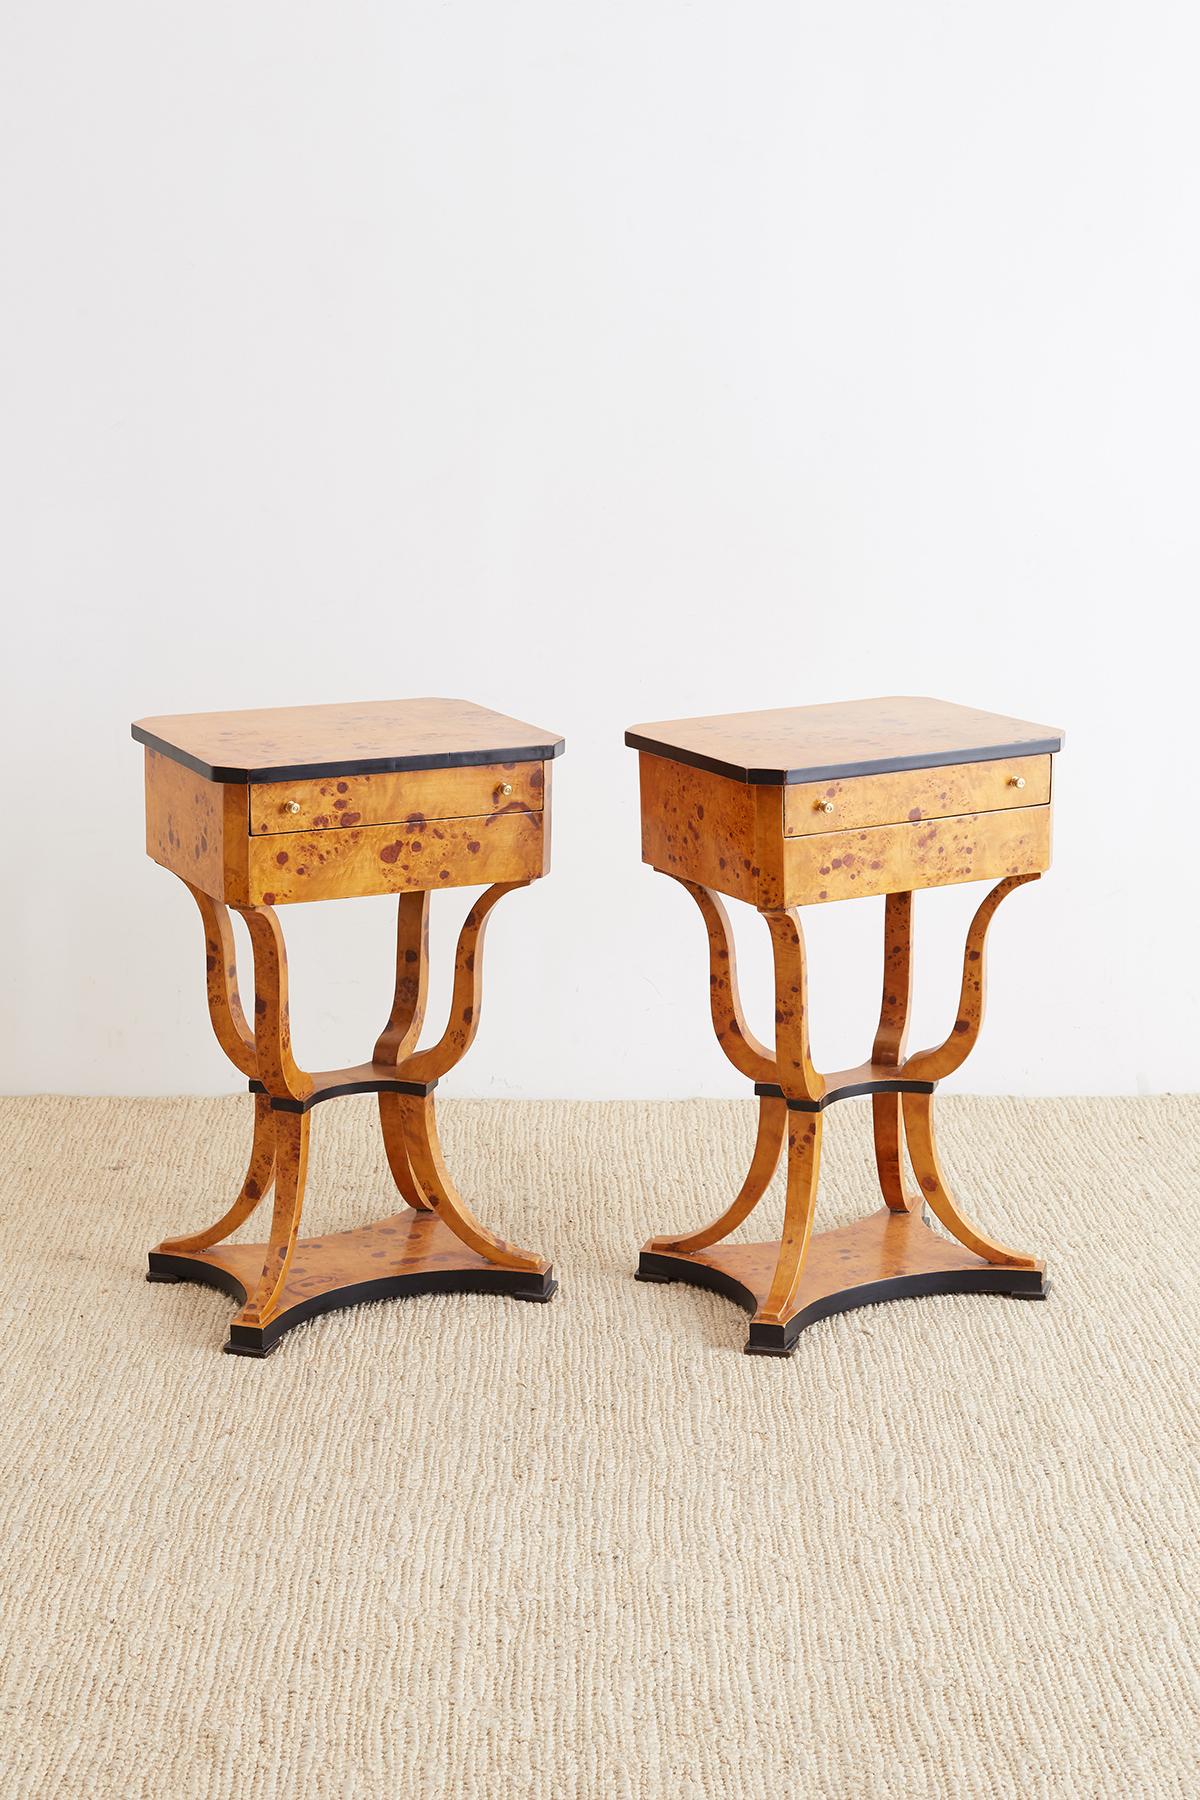 Pair of Swedish Biedermeier Style Sewing Table or Nightstands (Europäisch)